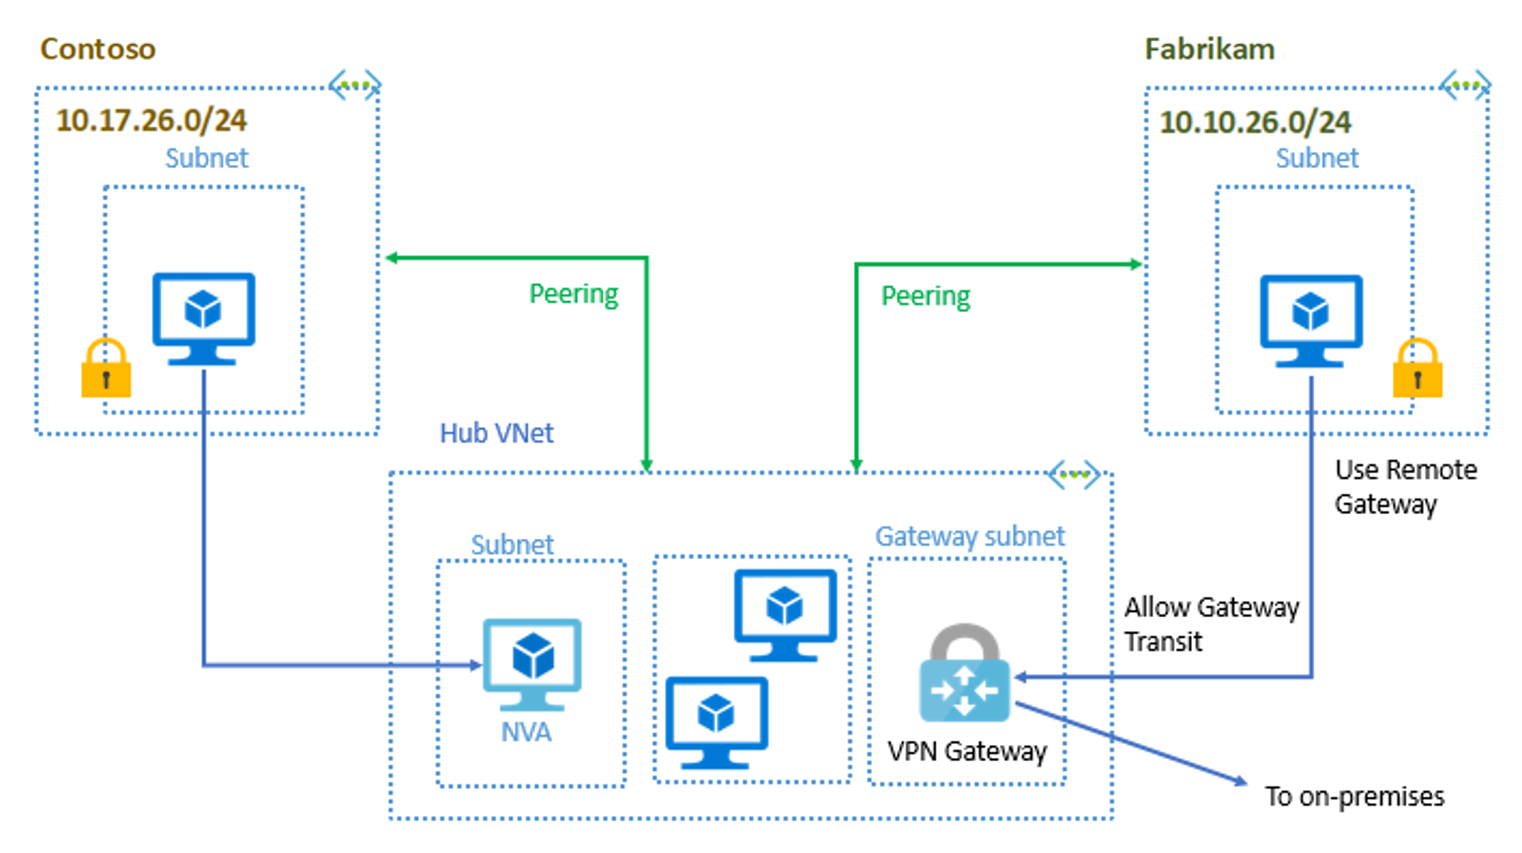 Merkez-uç yapılandırması - Contoso ve Fabrikam ile Merkez sanal ağı eşler. Hub sanal ağı NVA, VM'ler ve şirket içi ağa bağlı bir VPN Gateway içerir.